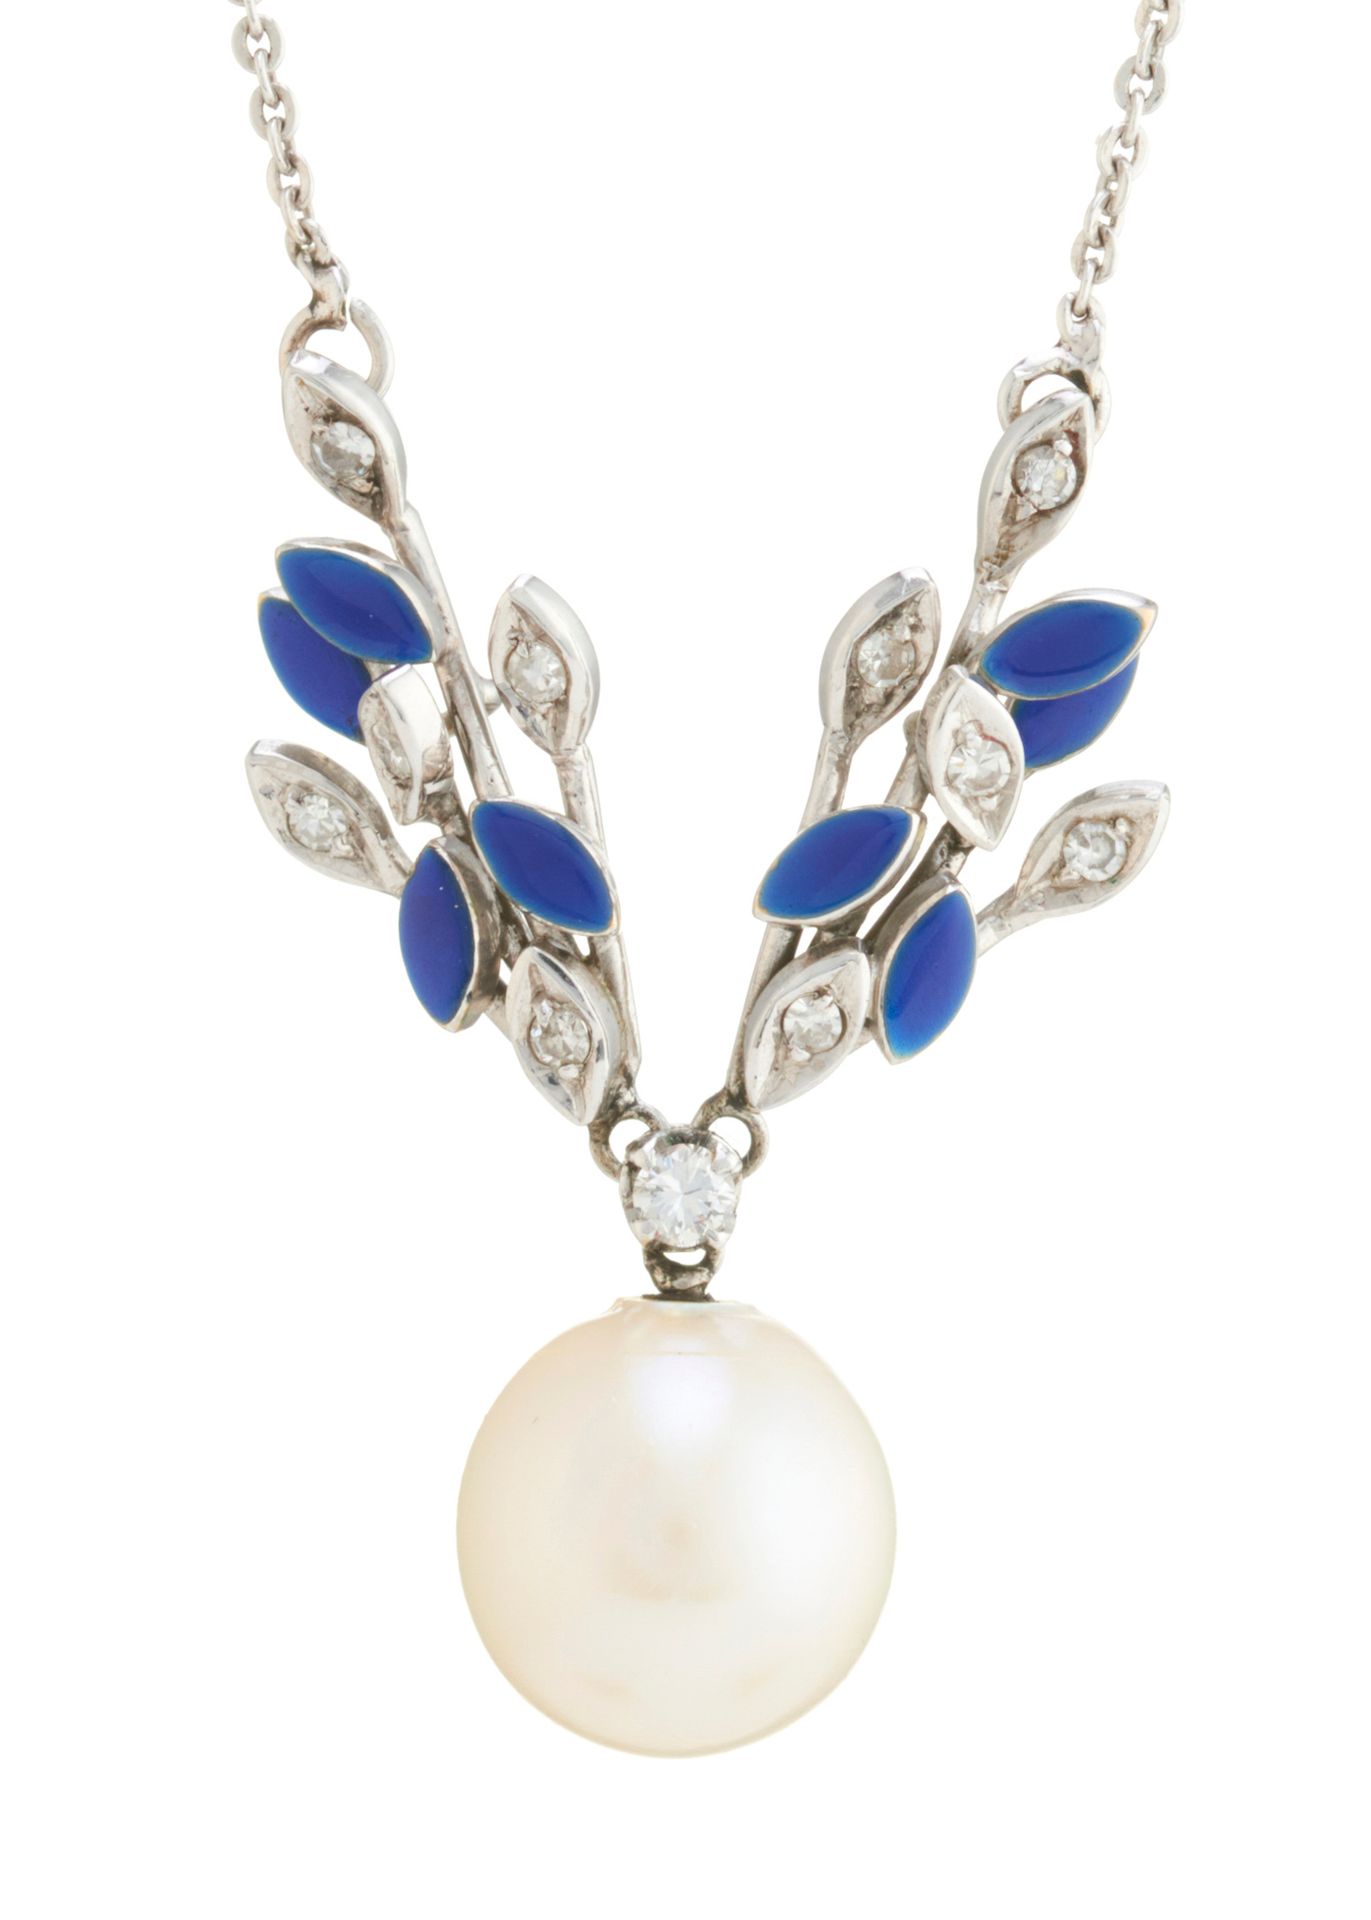 Null 一条养殖珍珠、钻石和蓝色珐琅花纹项链，带有完整的追踪链，养殖珍珠尺寸约为9.4毫米，估计钻石总重量为0.15克拉，长47厘米，重6.3克 - 总体状况&hellip;